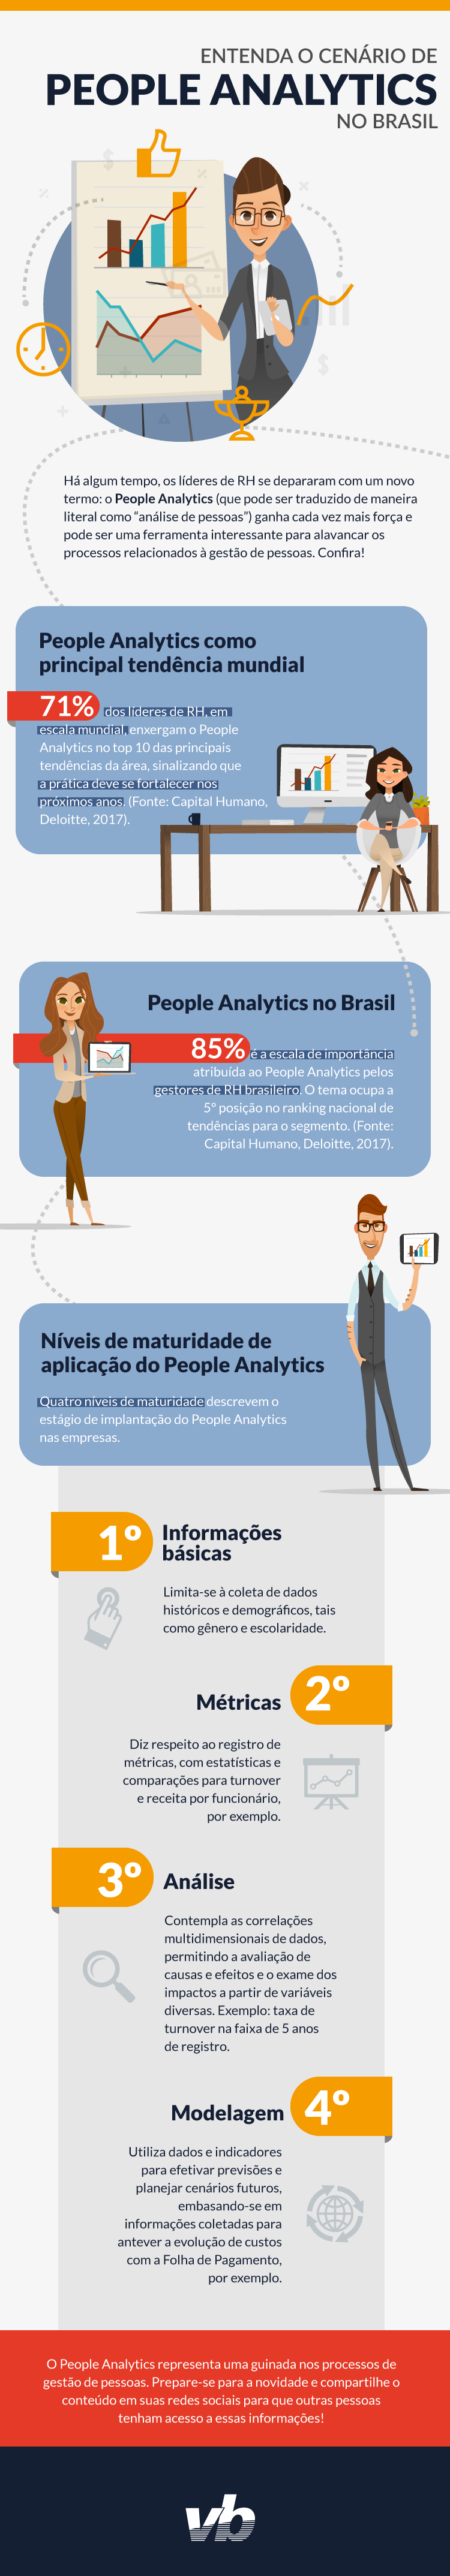 Entenda-o-cenário-de-People-Analytics-no-Brasil